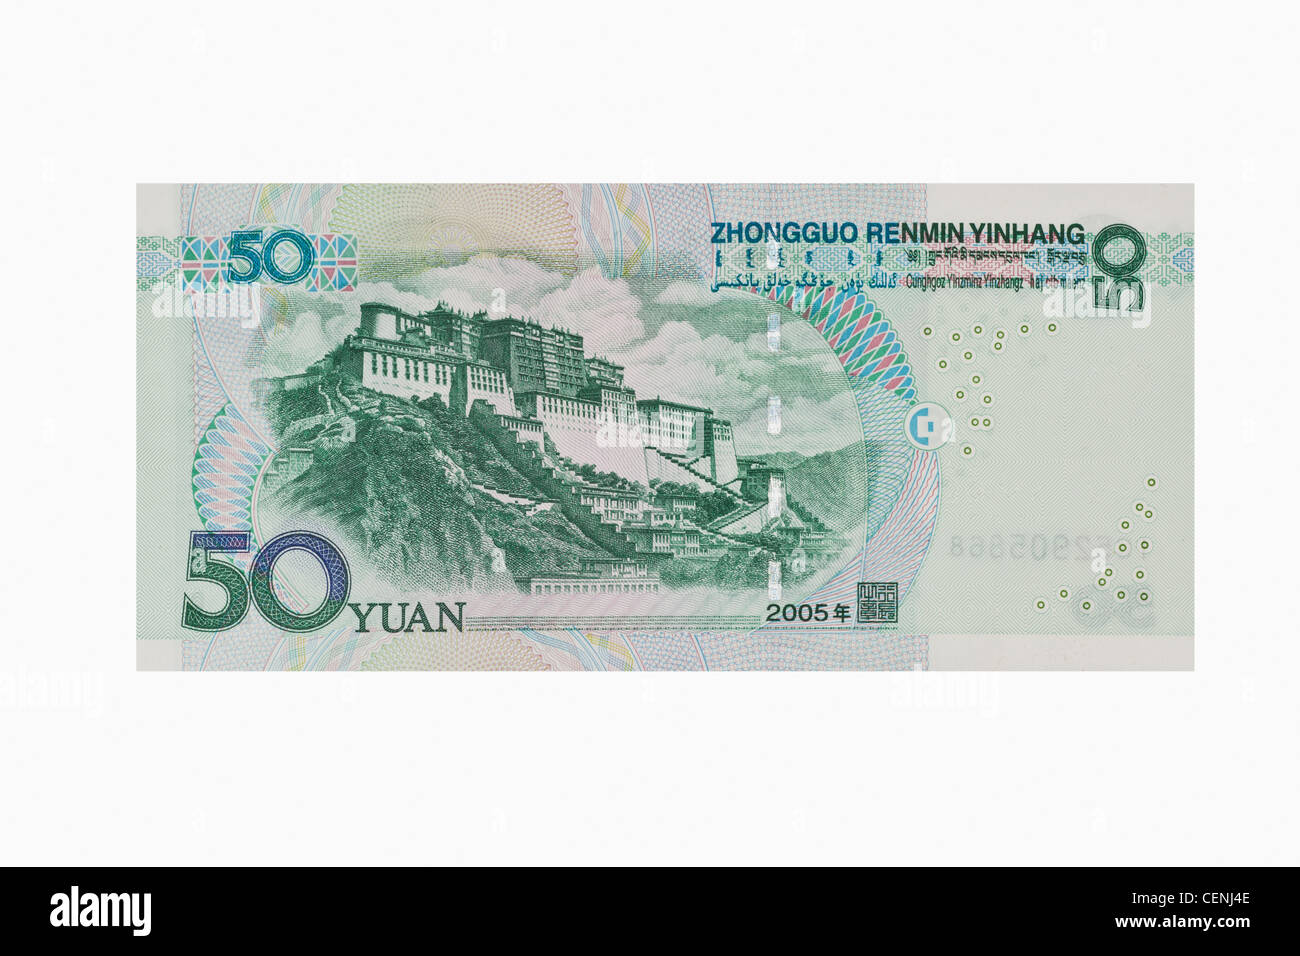 Lato posteriore del 50 yuan bill. Il renminbi, la valuta cinese, è stato introdotto nel 1949 dopo la fondazione della Repubblica popolare cinese. Foto Stock